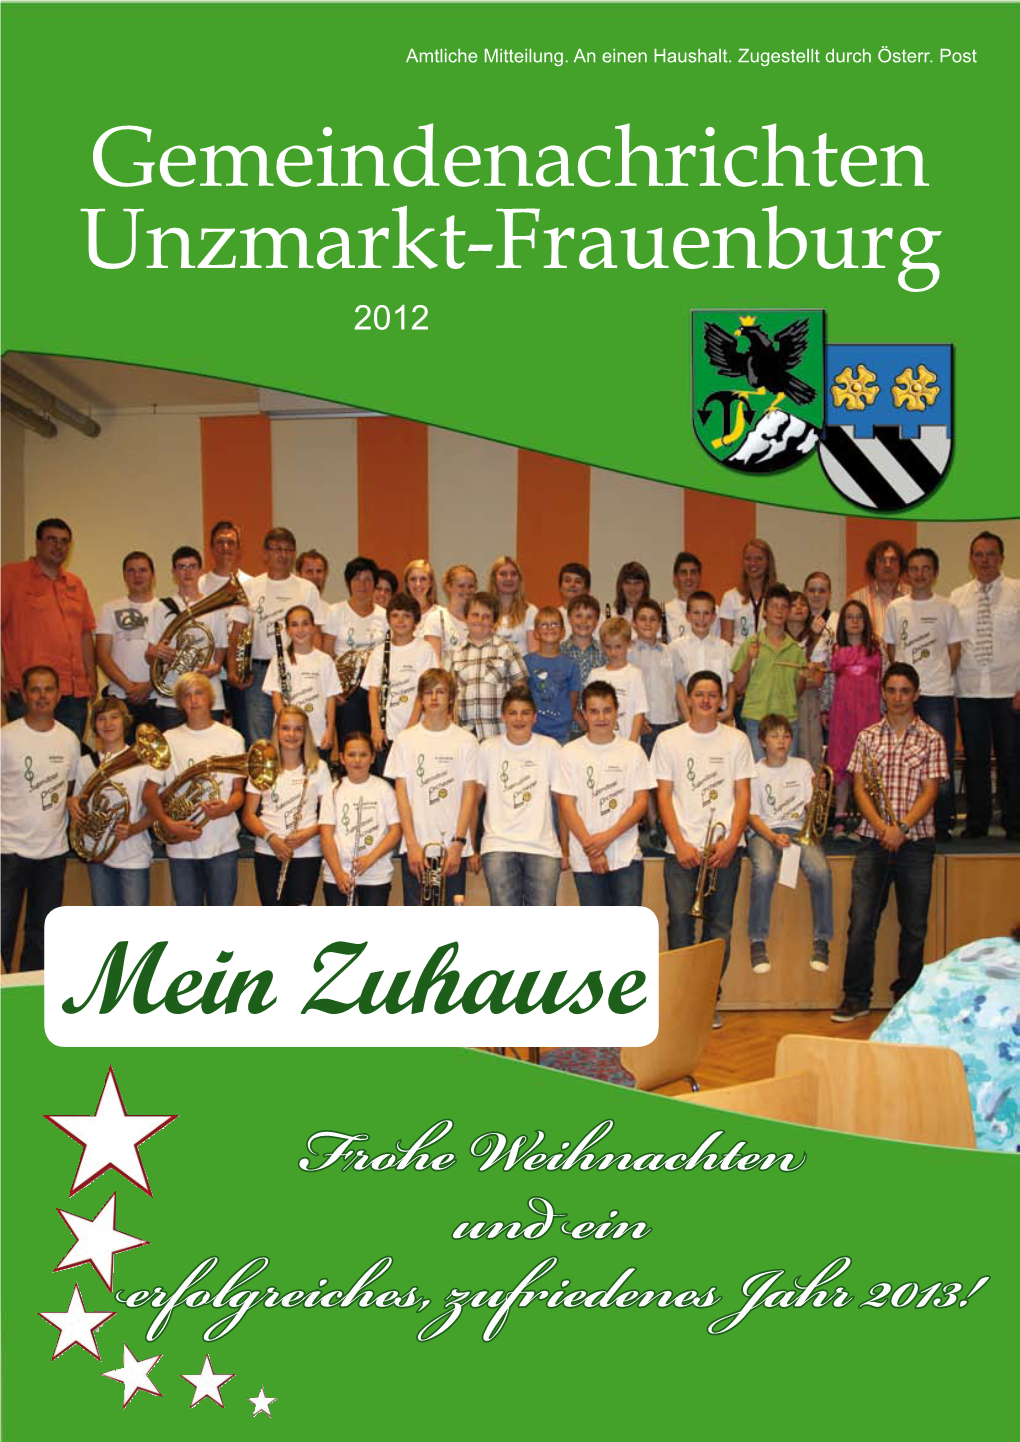 Gemeindenachrichten Unzmarkt-Frauenburg 2012